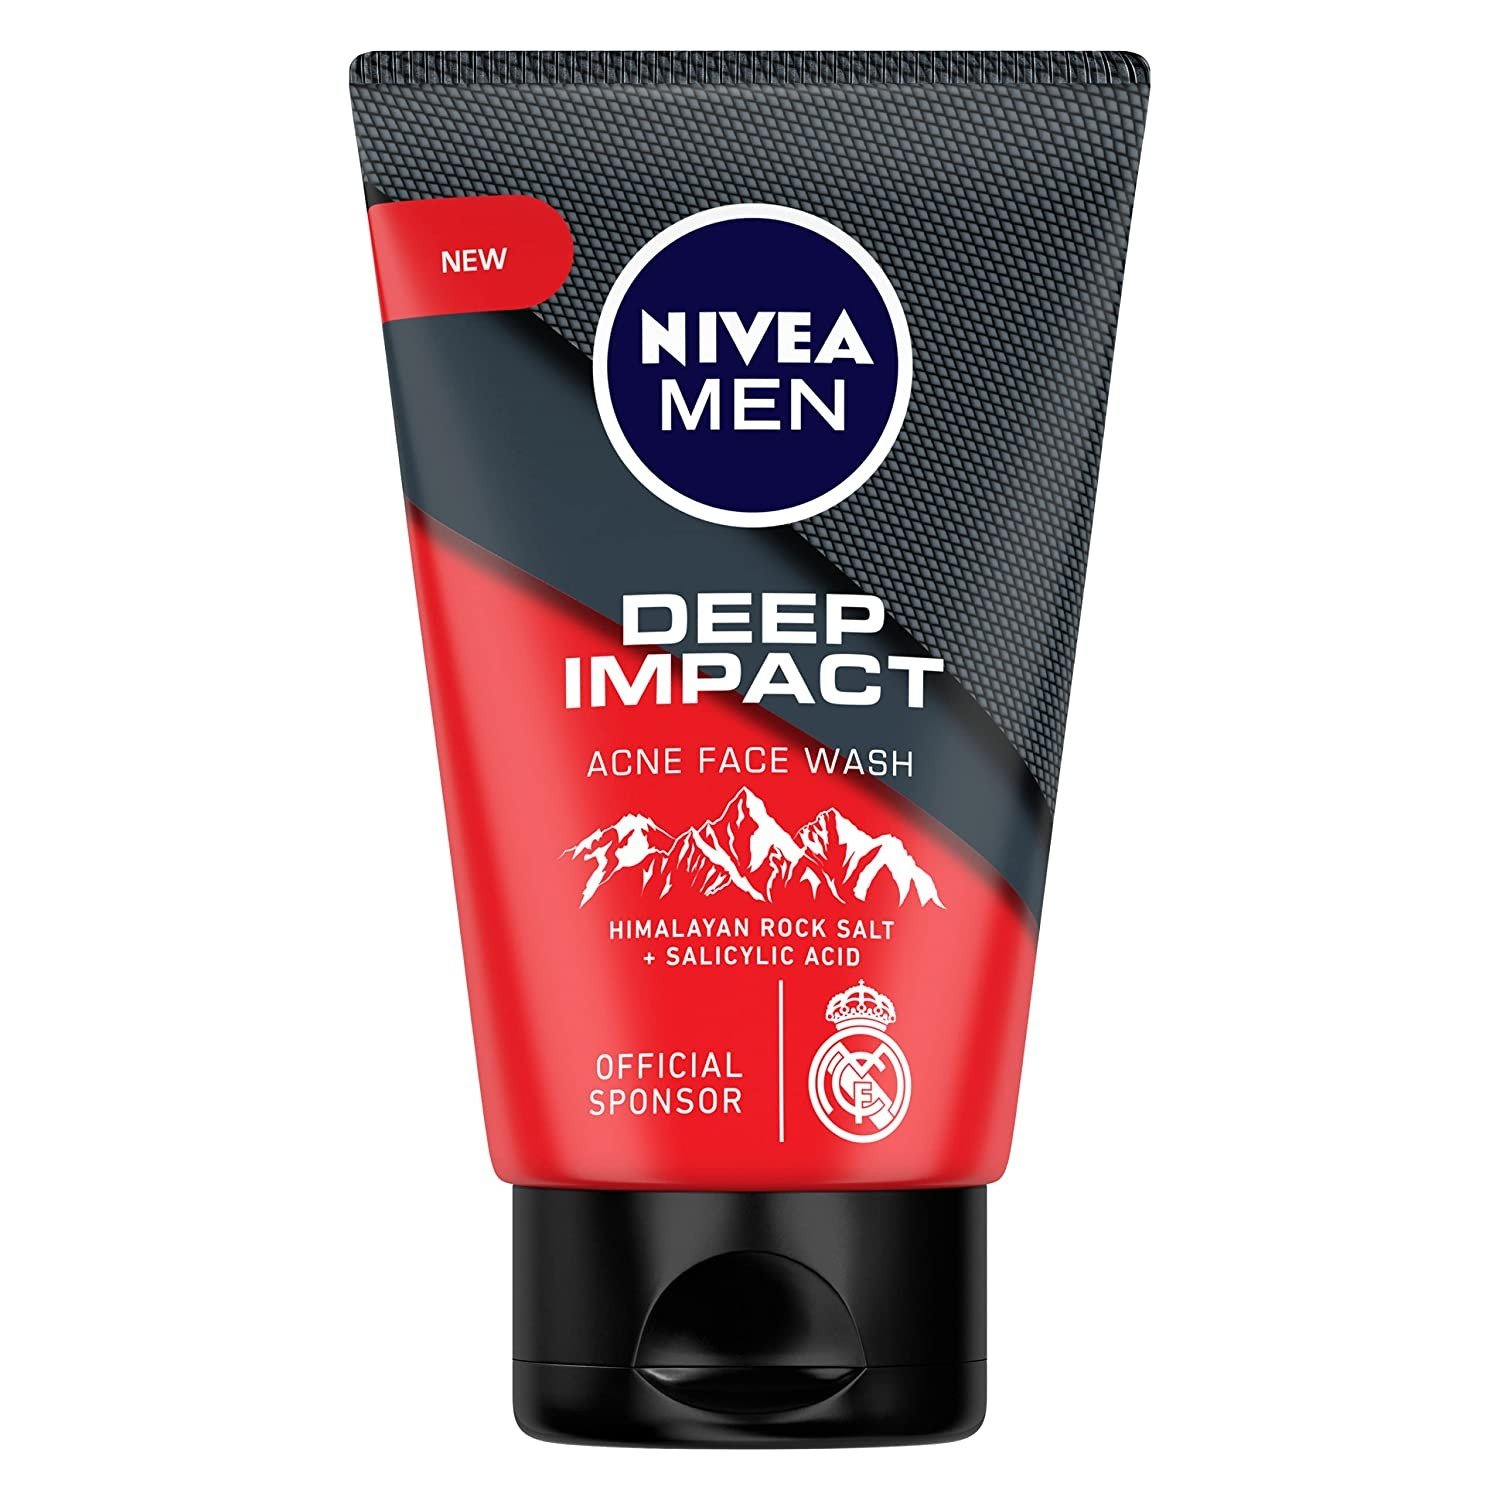 Nivea Men Facewash ( 100g ) Deep Impact Acne, With Himalayan Rock Salt